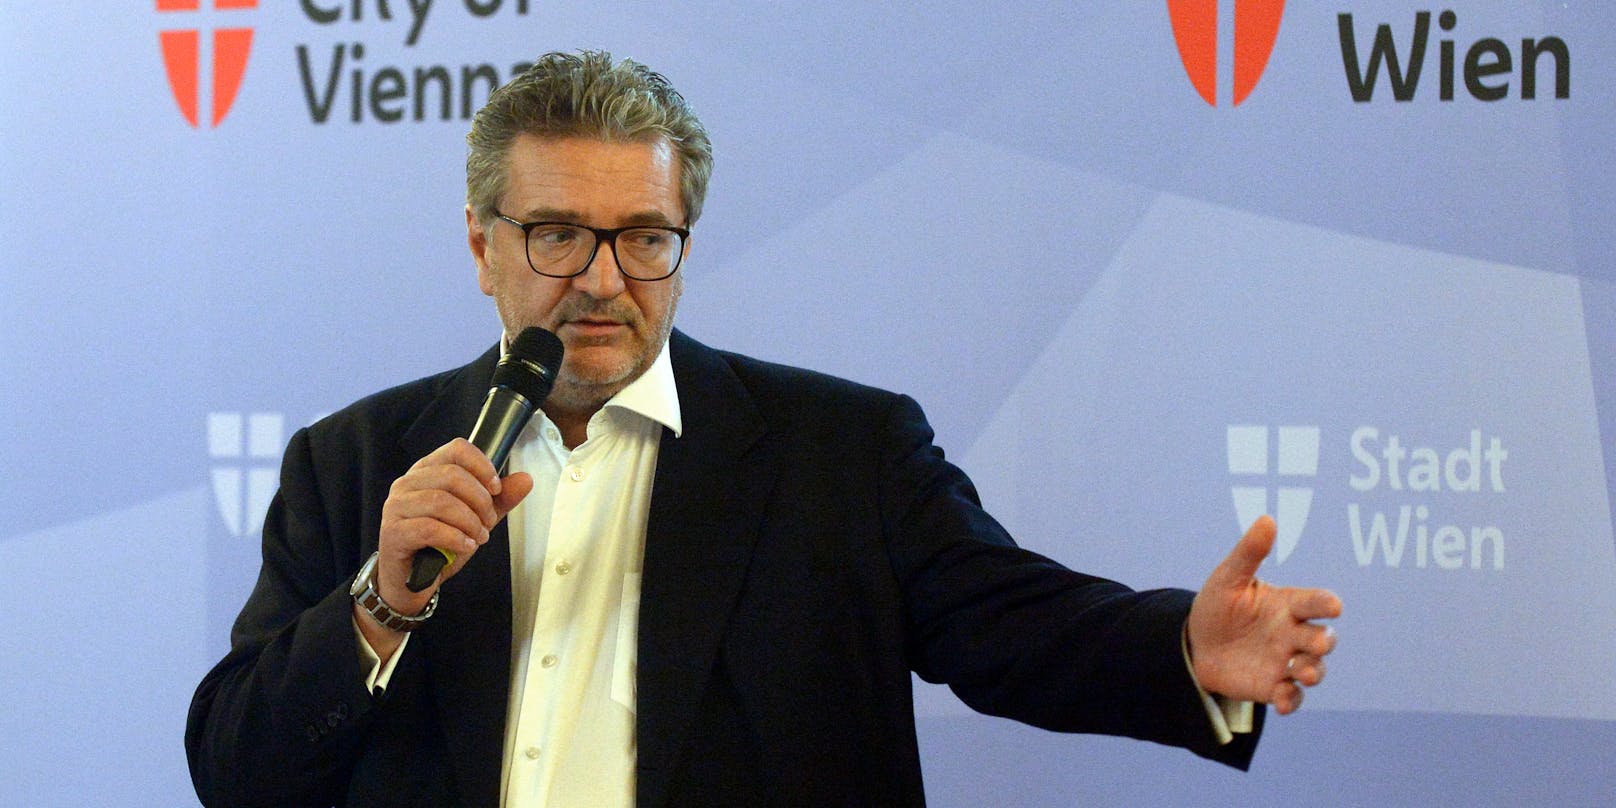 Gesundheitsstadtrat Peter Hacker (SPÖ).